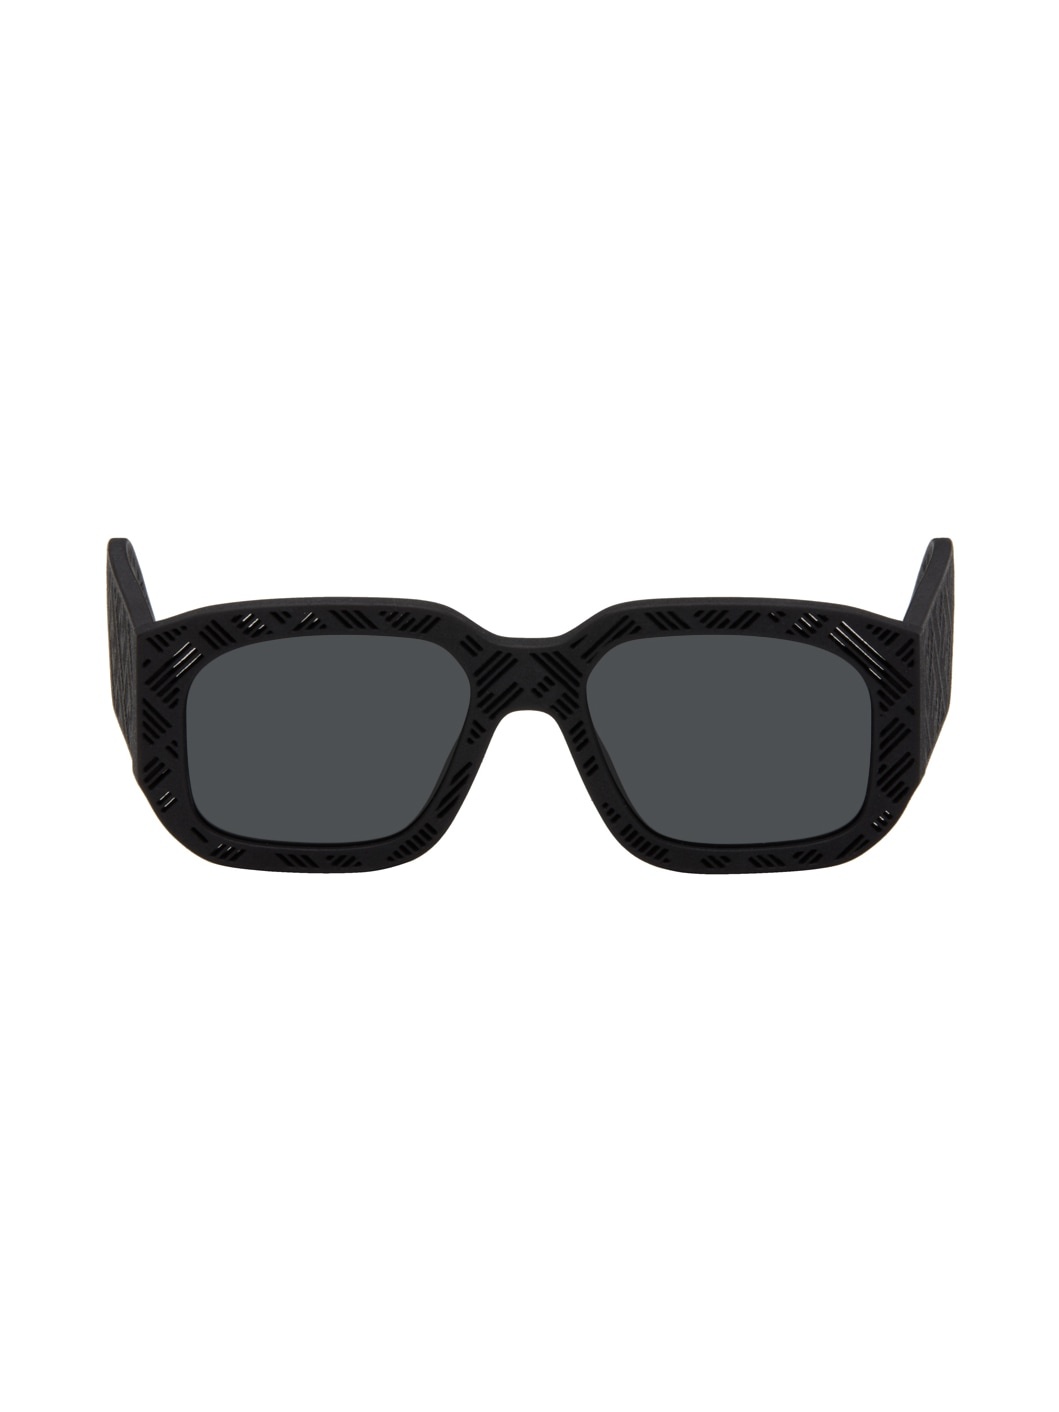 Black Shadow Sunglasses - 1